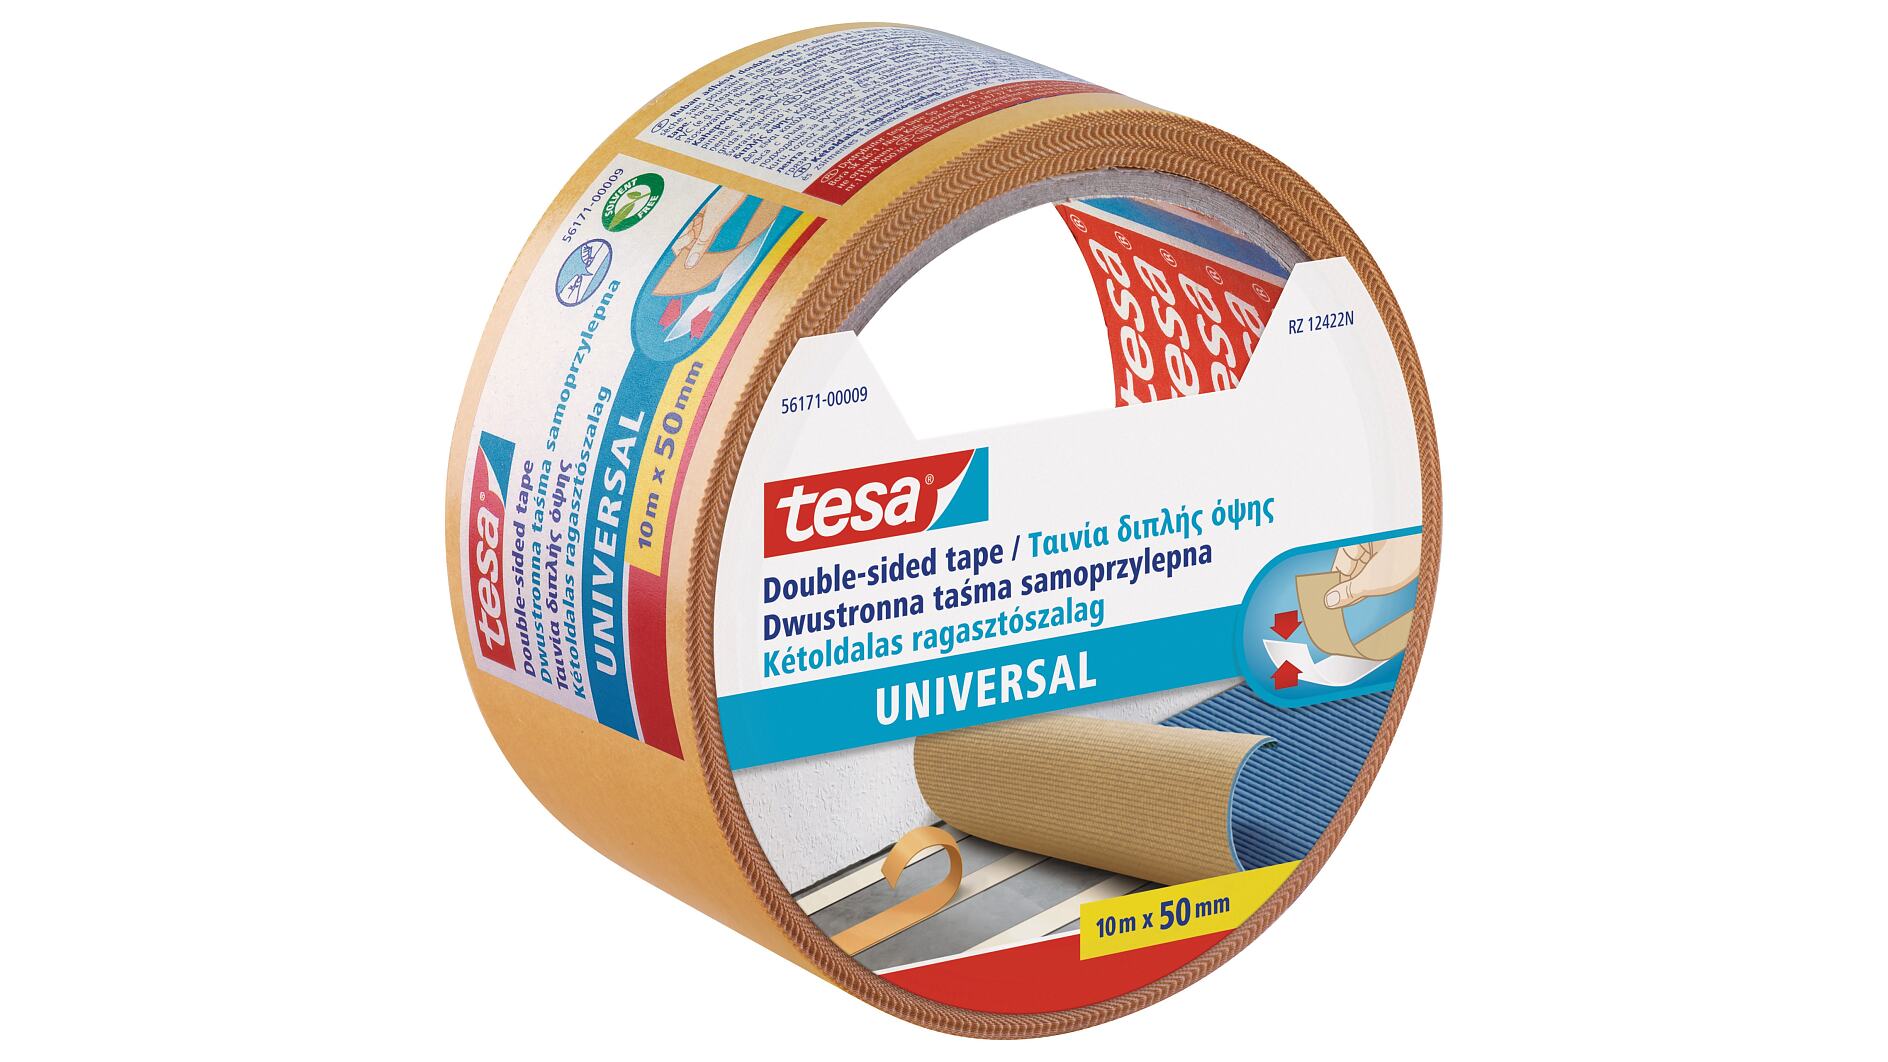 Tesa Tape 30 mm x 50 m - DocHorse